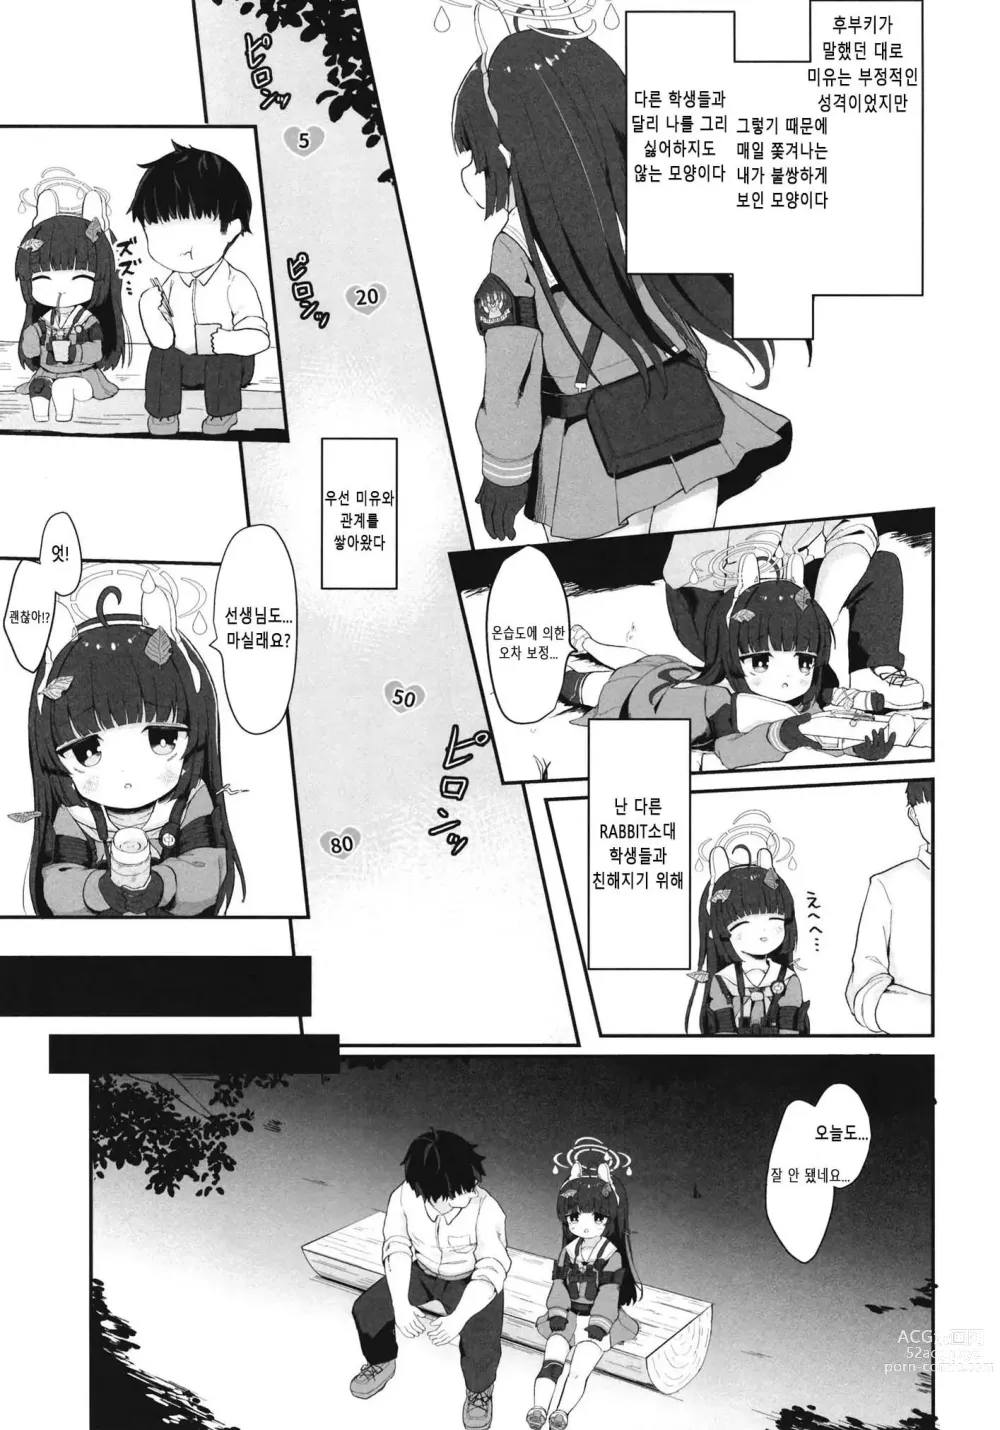 Page 10 of doujinshi 꼬리 흔드는 토끼는 얻어맞는다